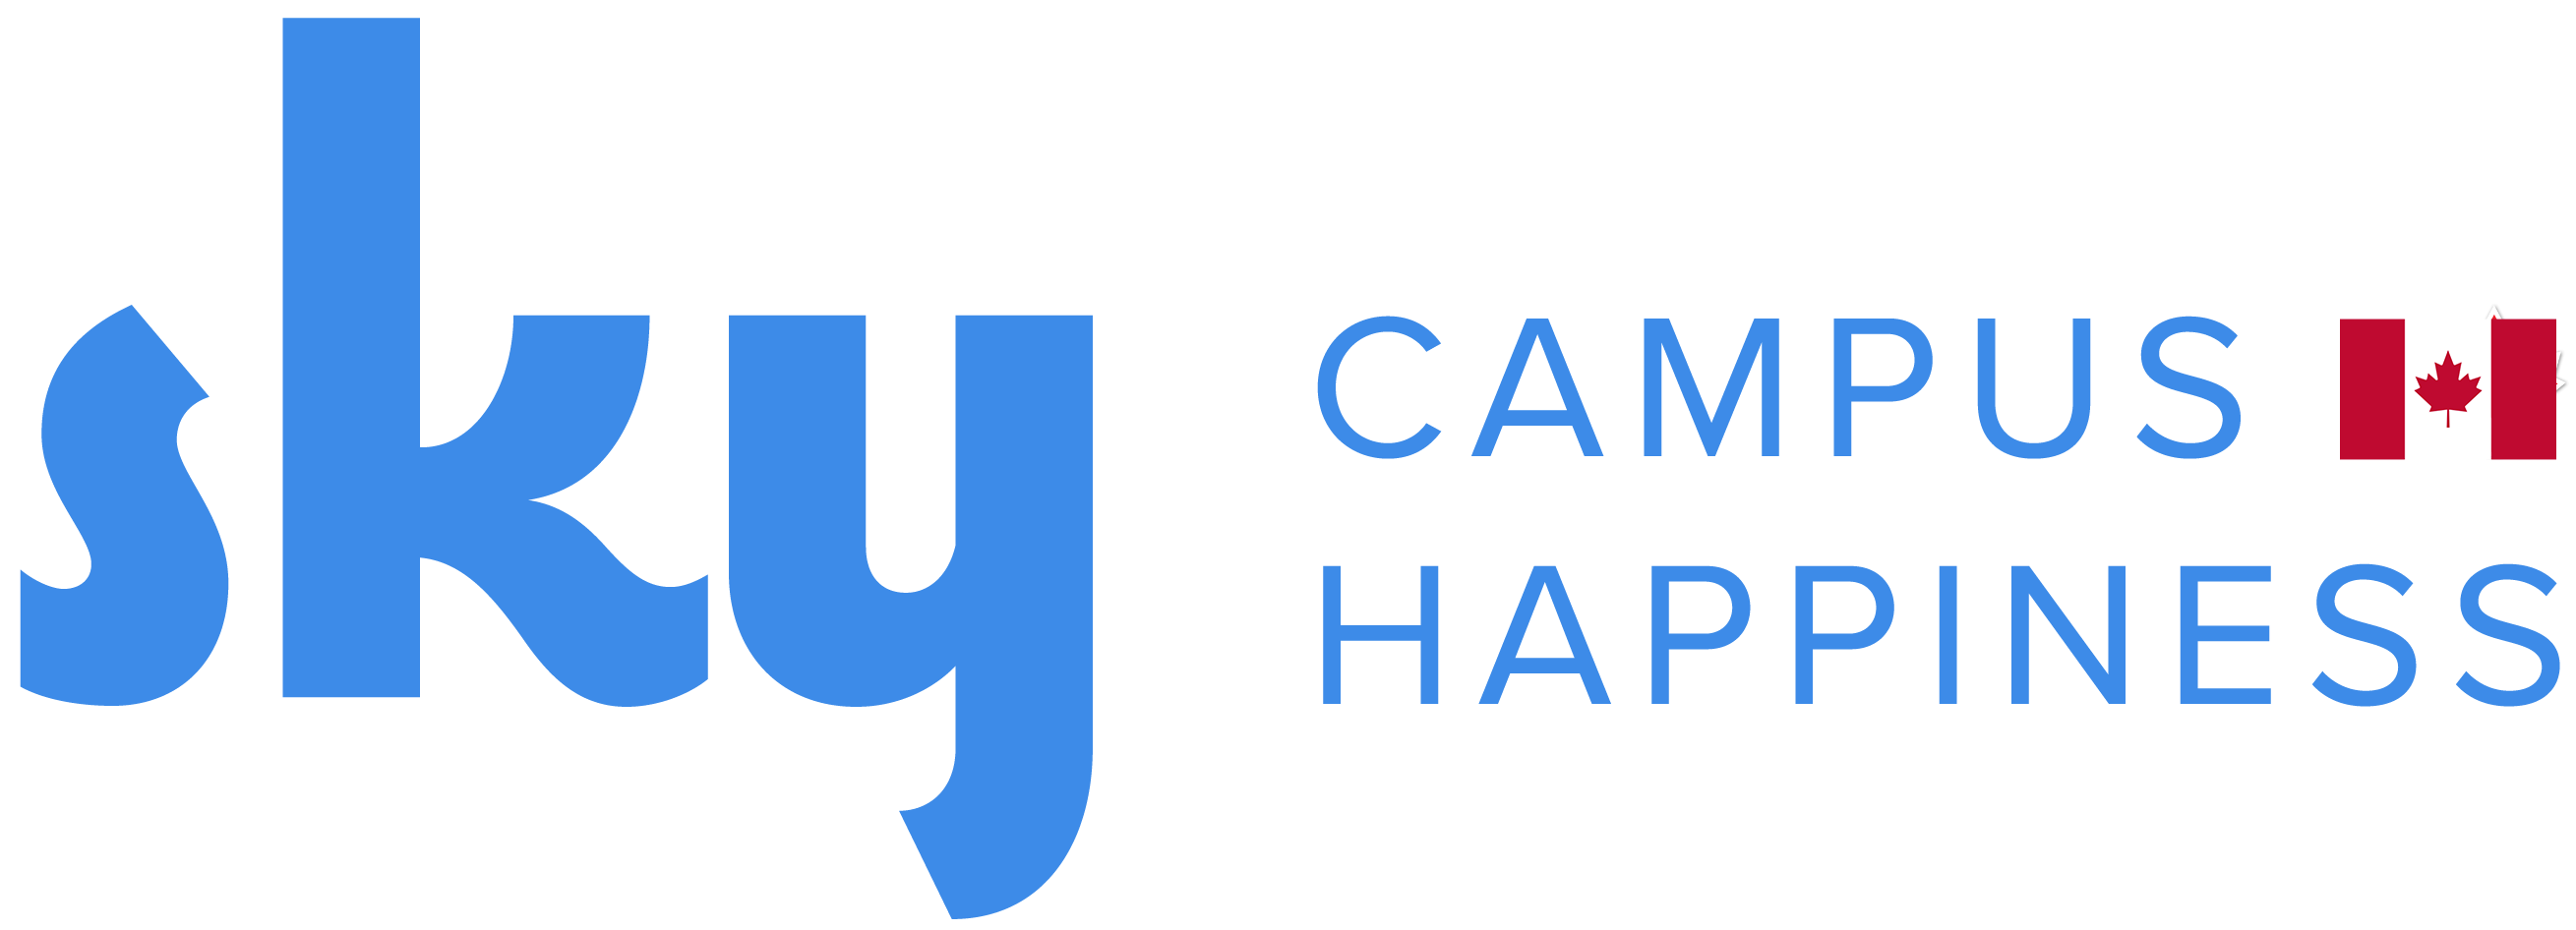 SKY campus Canada logo